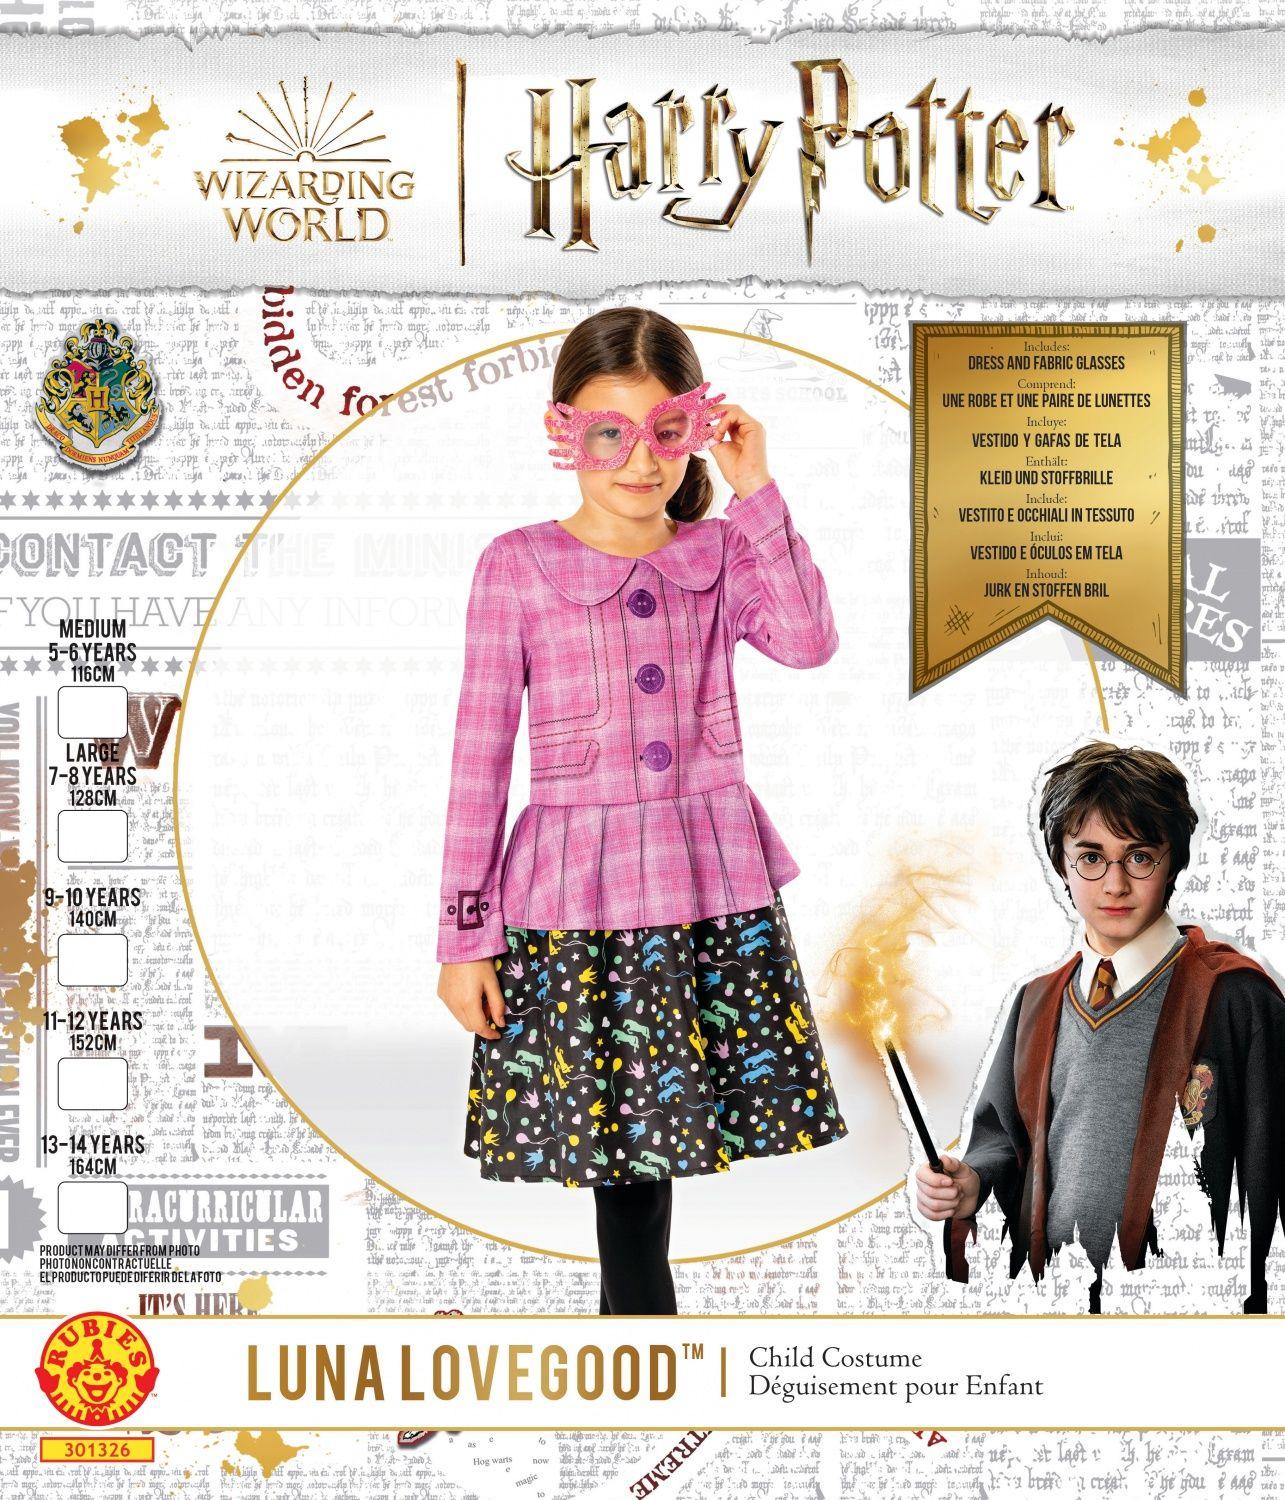 Déguisement Robe Harry Potter - Enfant - 8/10 ans (128 à 140 cm)